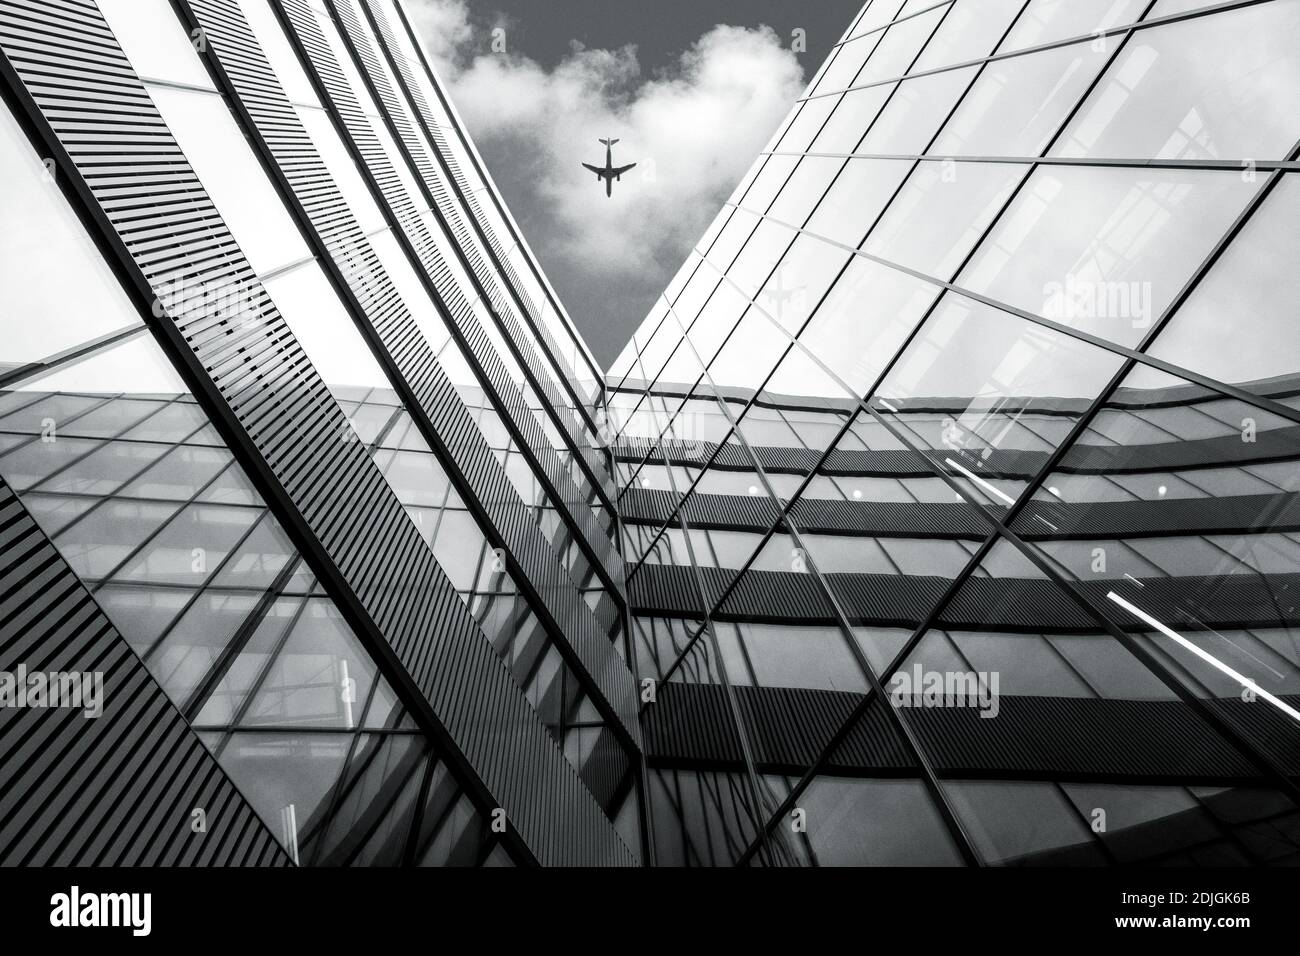 Flying airplane sur l'architecture moderne construction haut contraste noir et blanc photo Banque D'Images